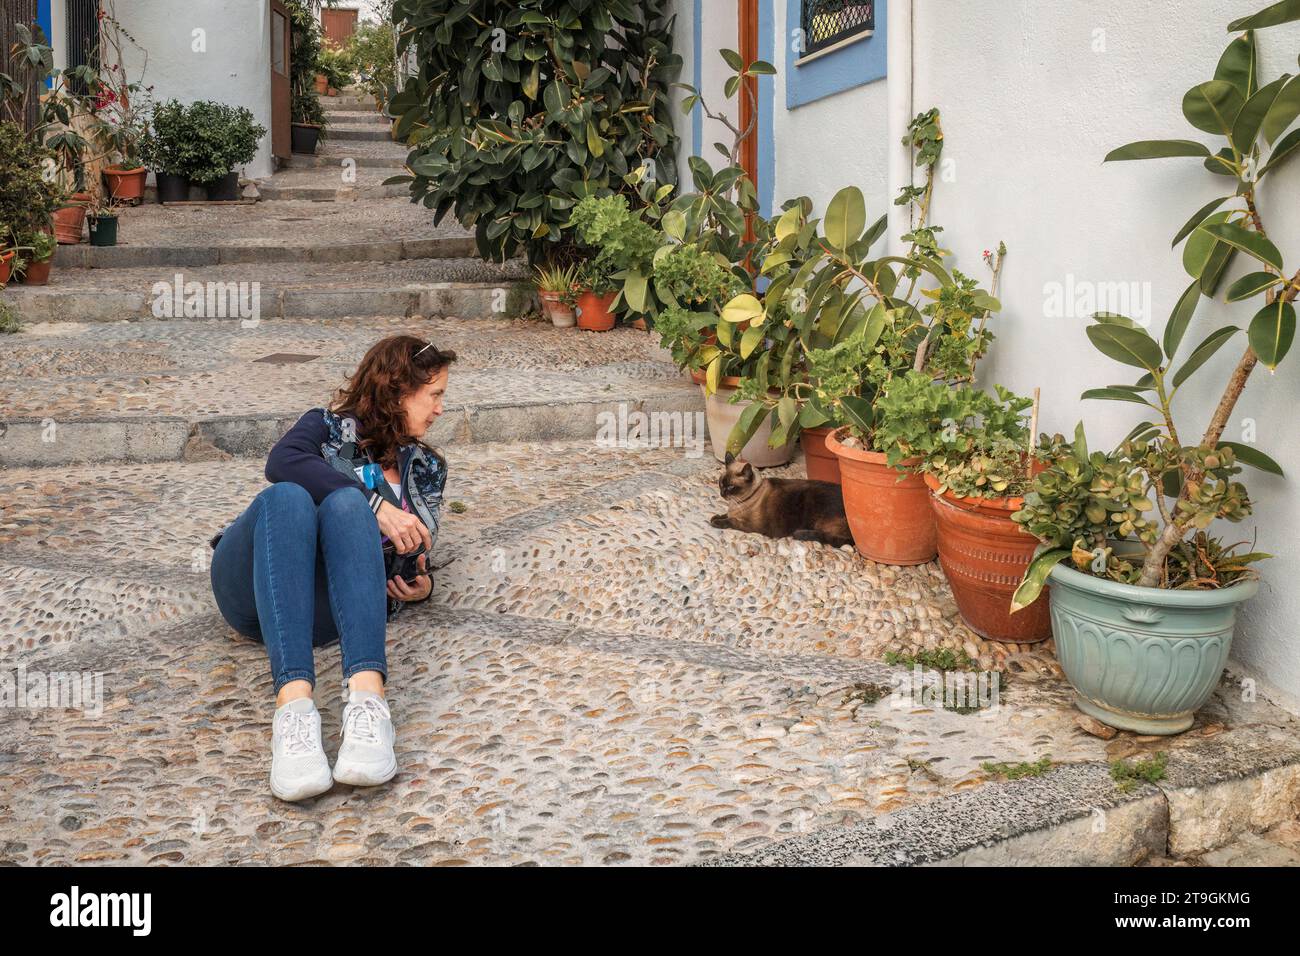 Donna sdraiata a terra con jeans e giacca che parla con un gatto su una strada acciottolata con scale nella città di Peñiscola, Castellon, Spagna. Foto Stock